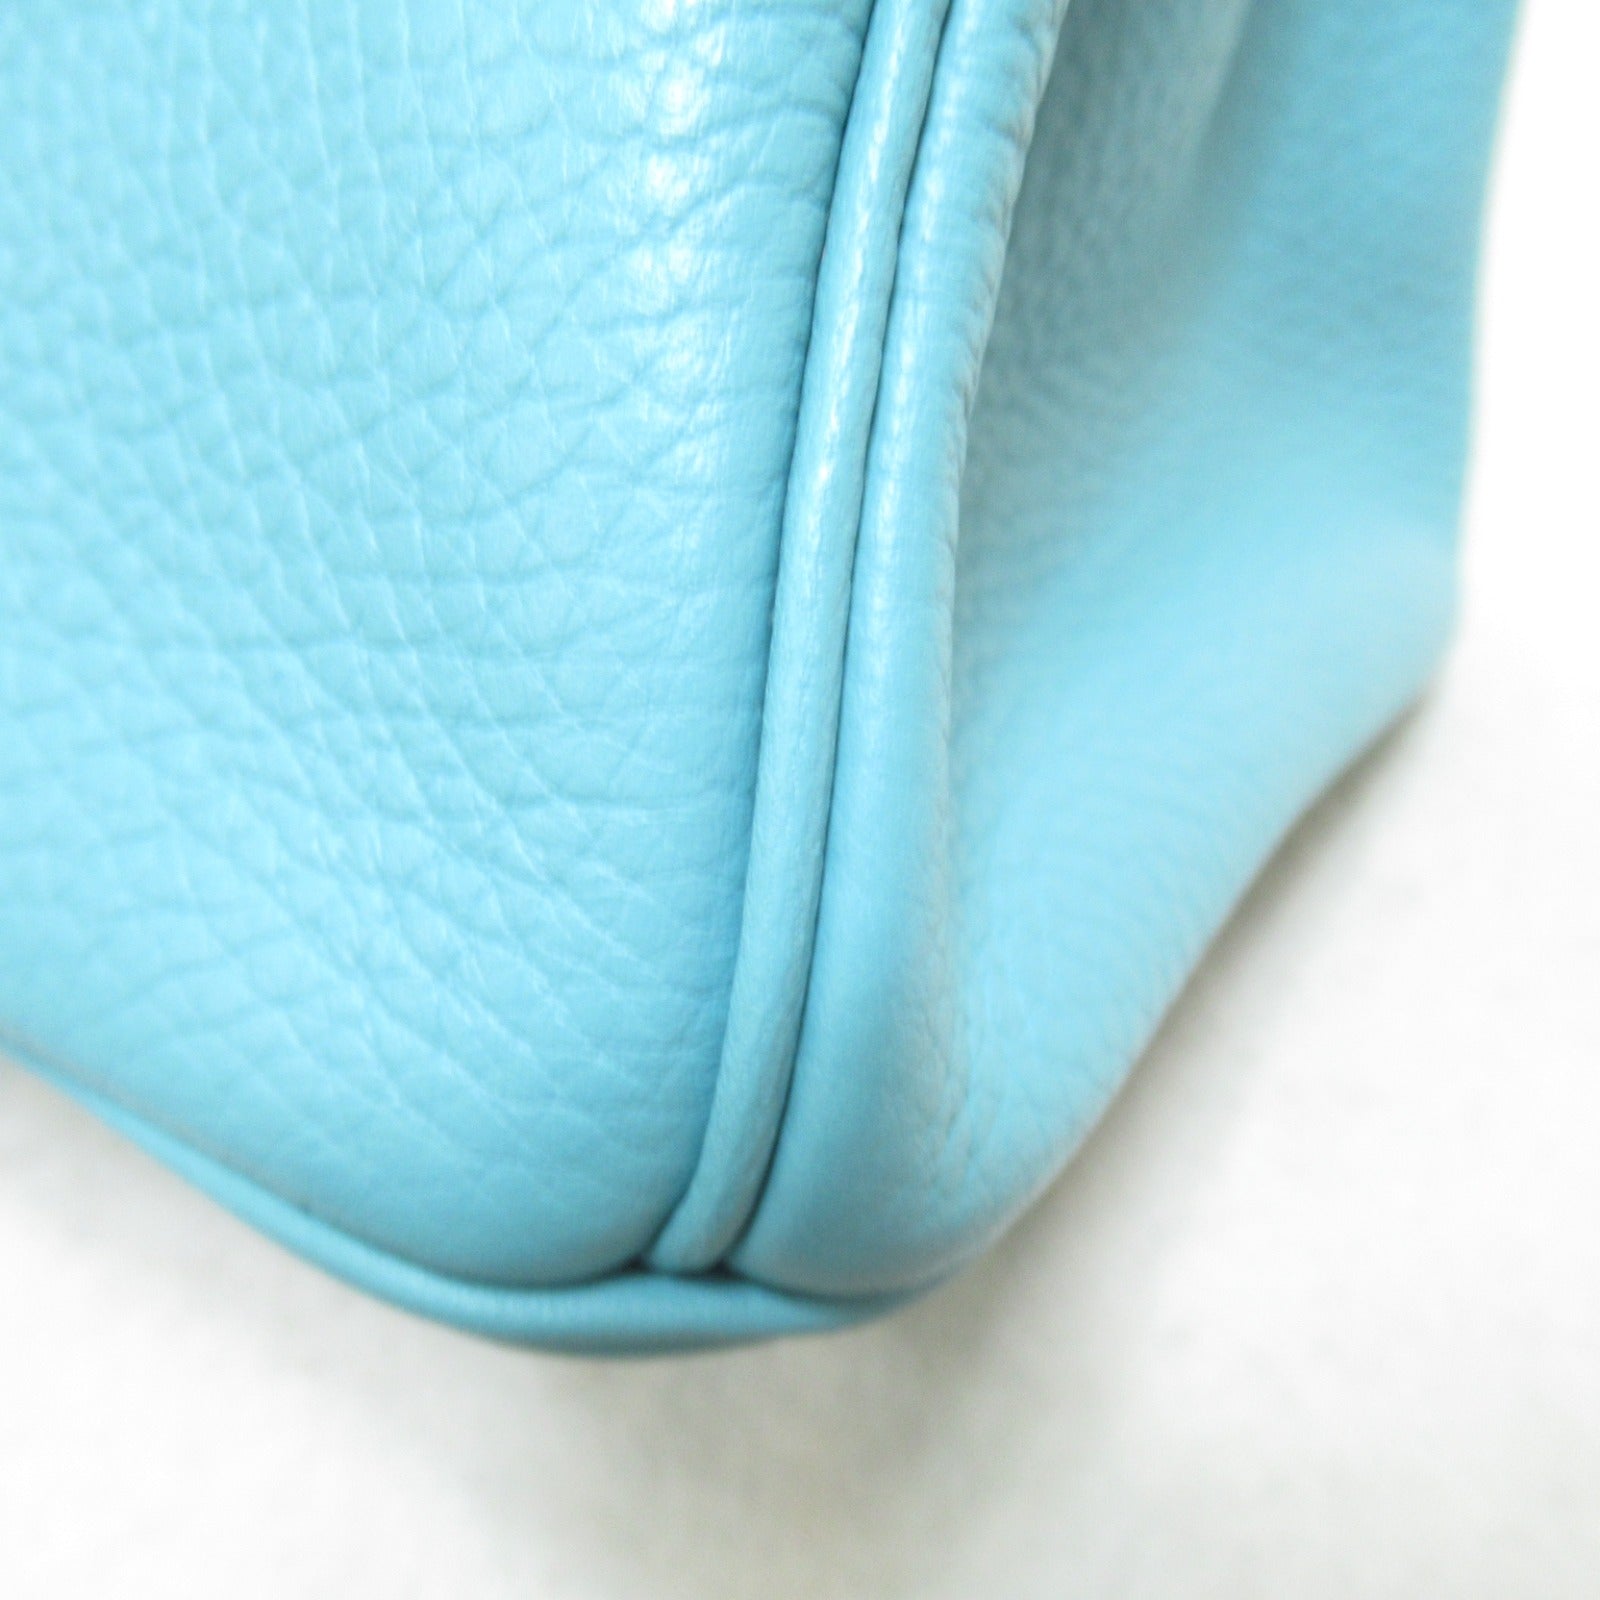 Hermes Birkin 30 Blue Art Handbag Handbag Handbag